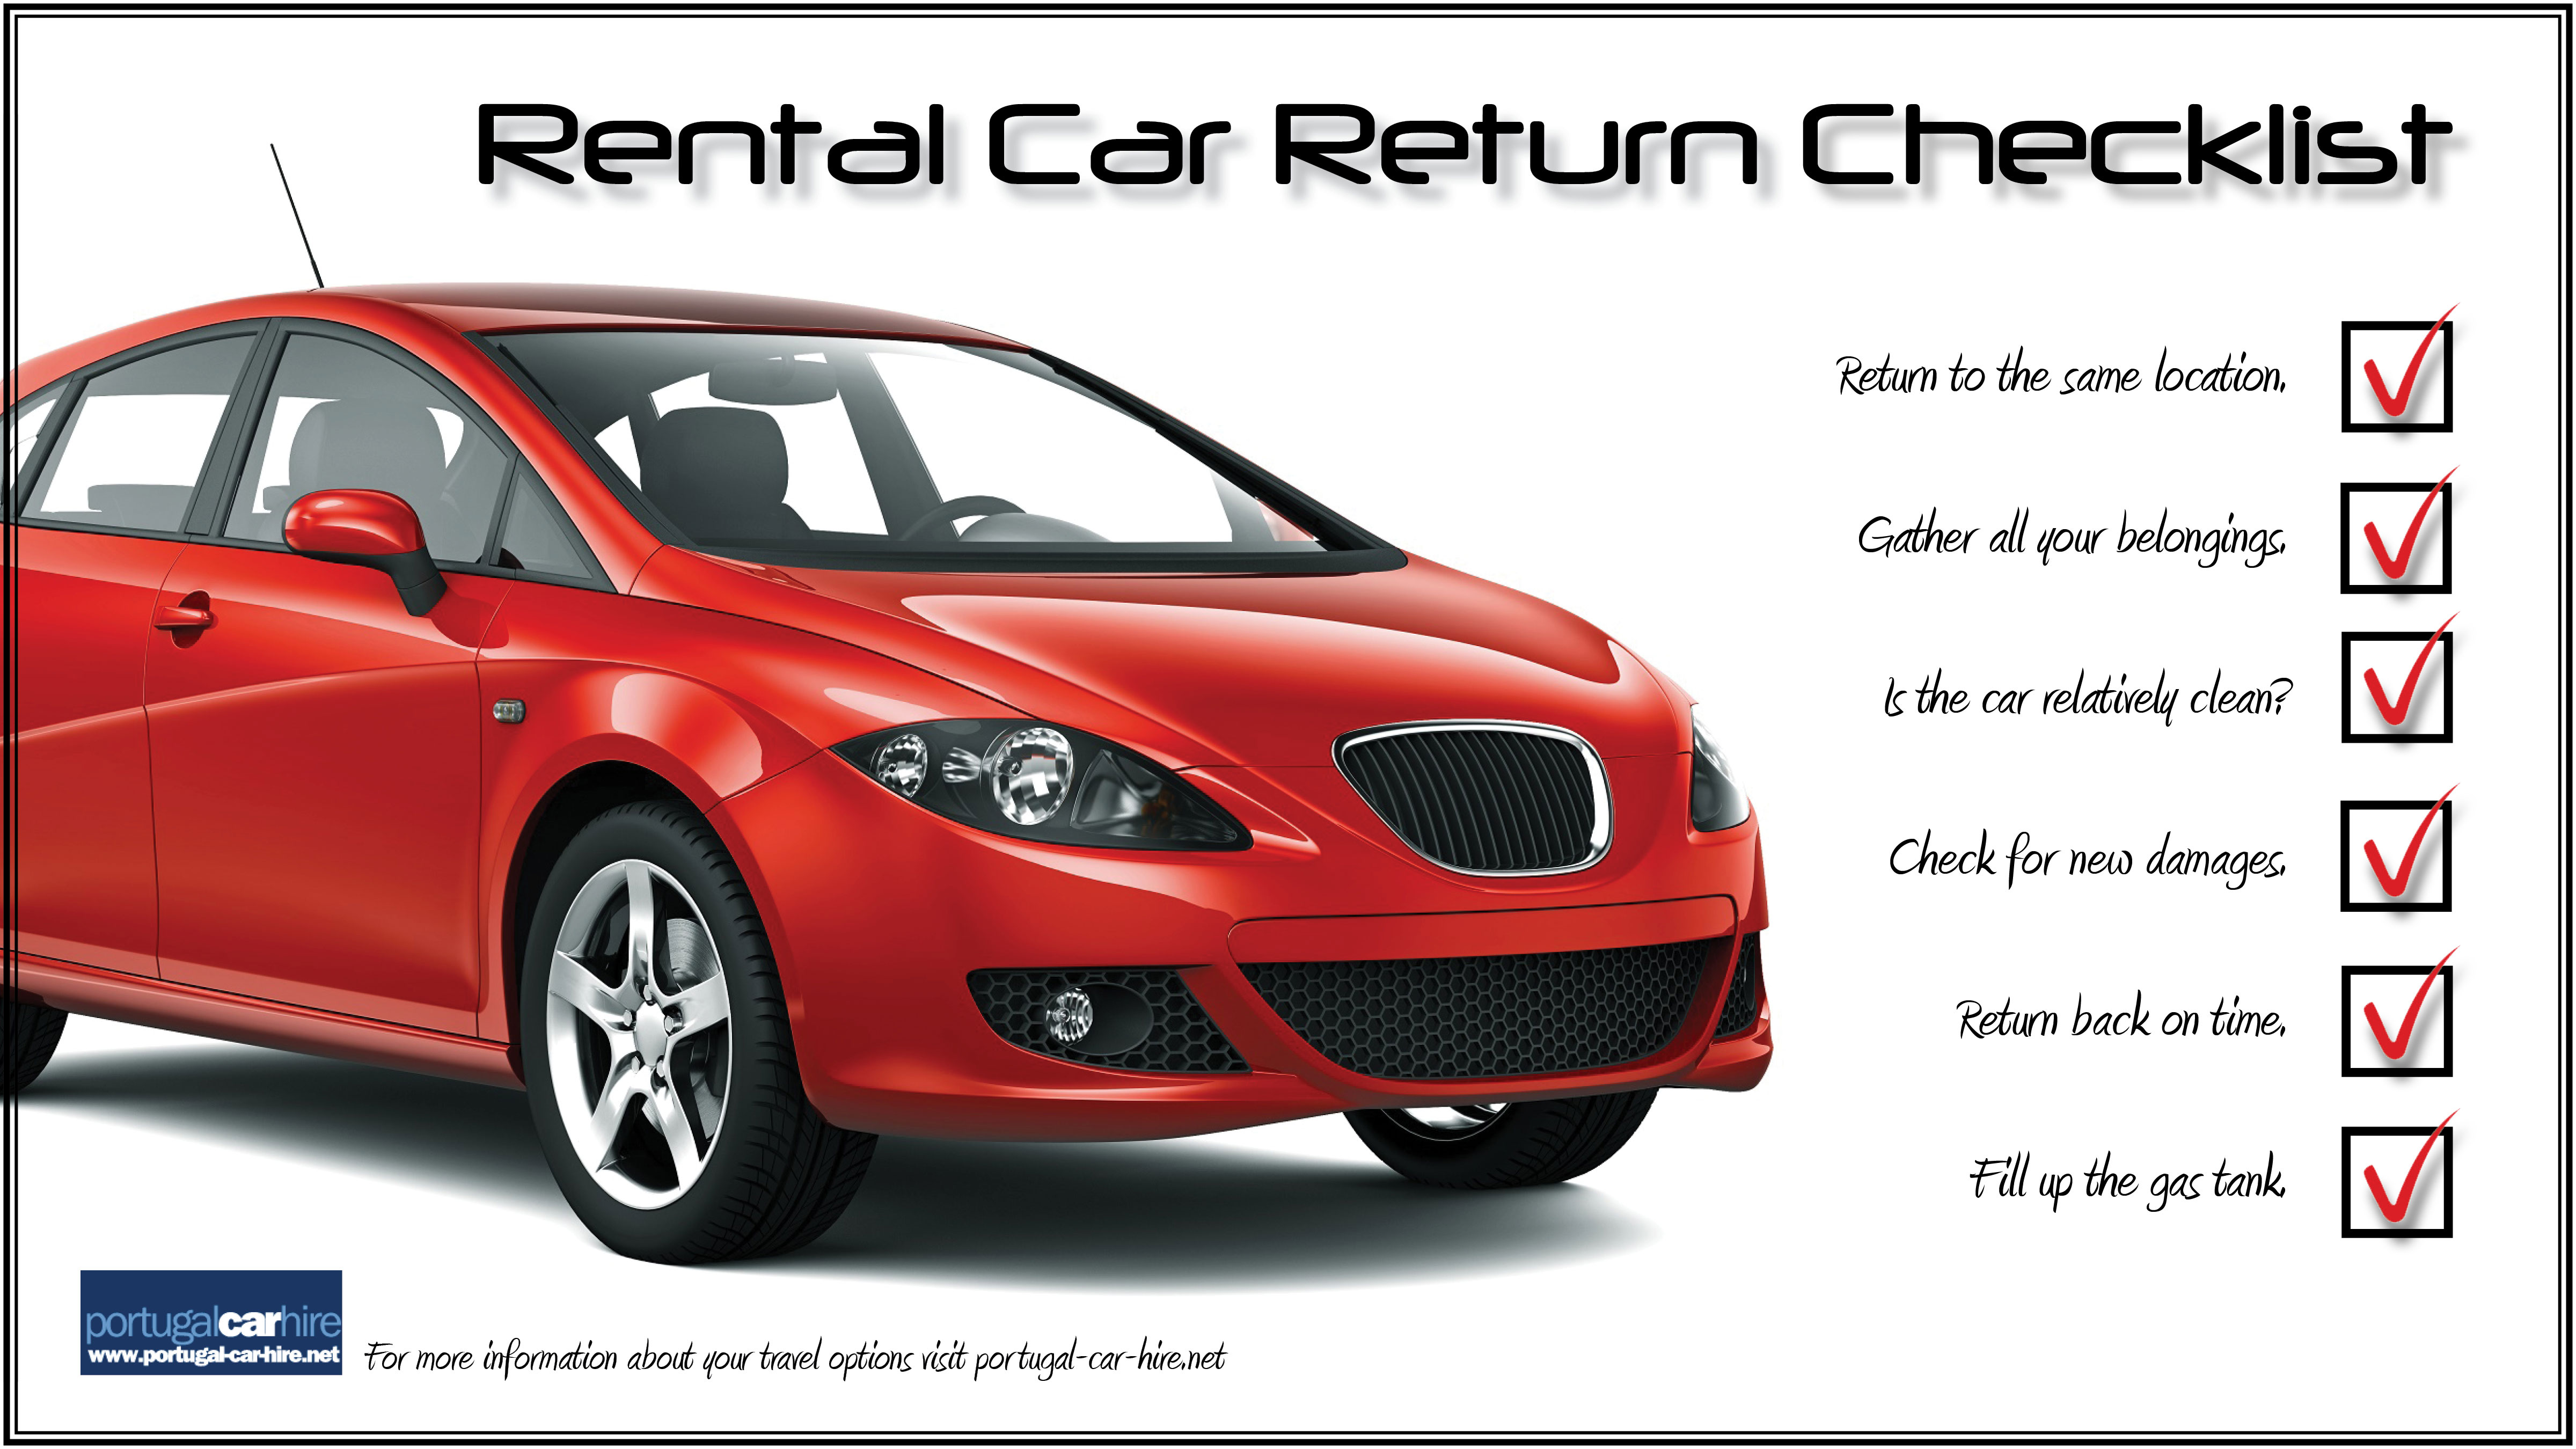 Rental Car Return Checklist